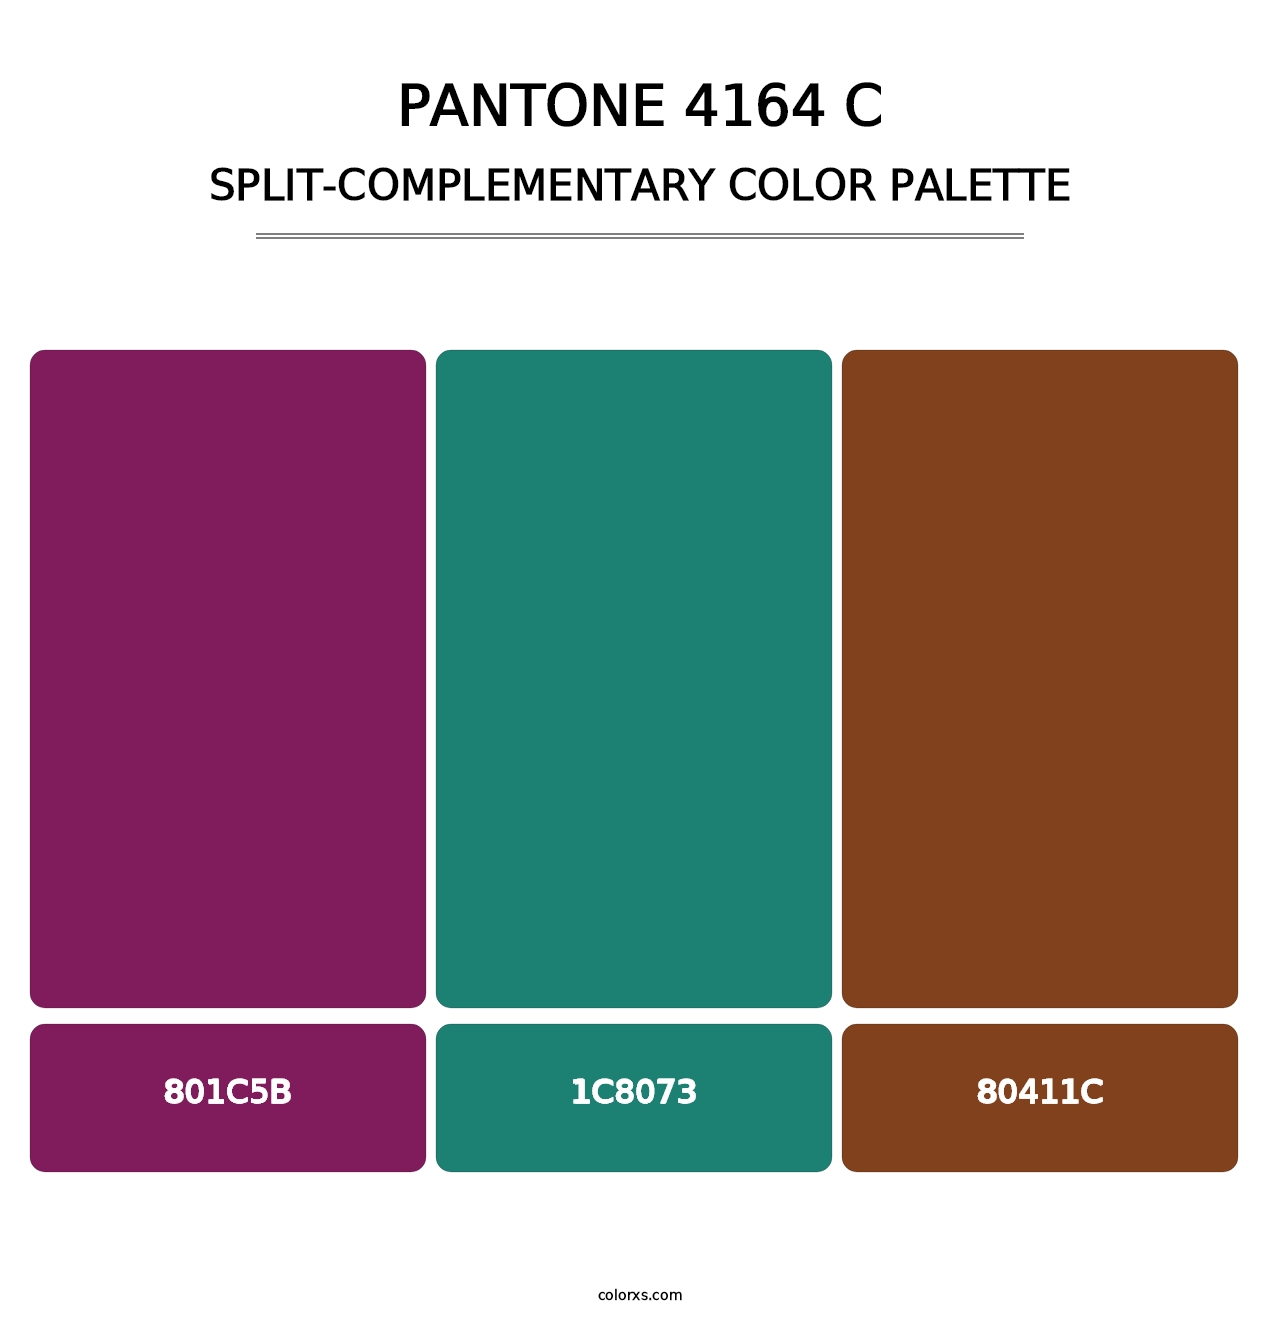 PANTONE 4164 C - Split-Complementary Color Palette